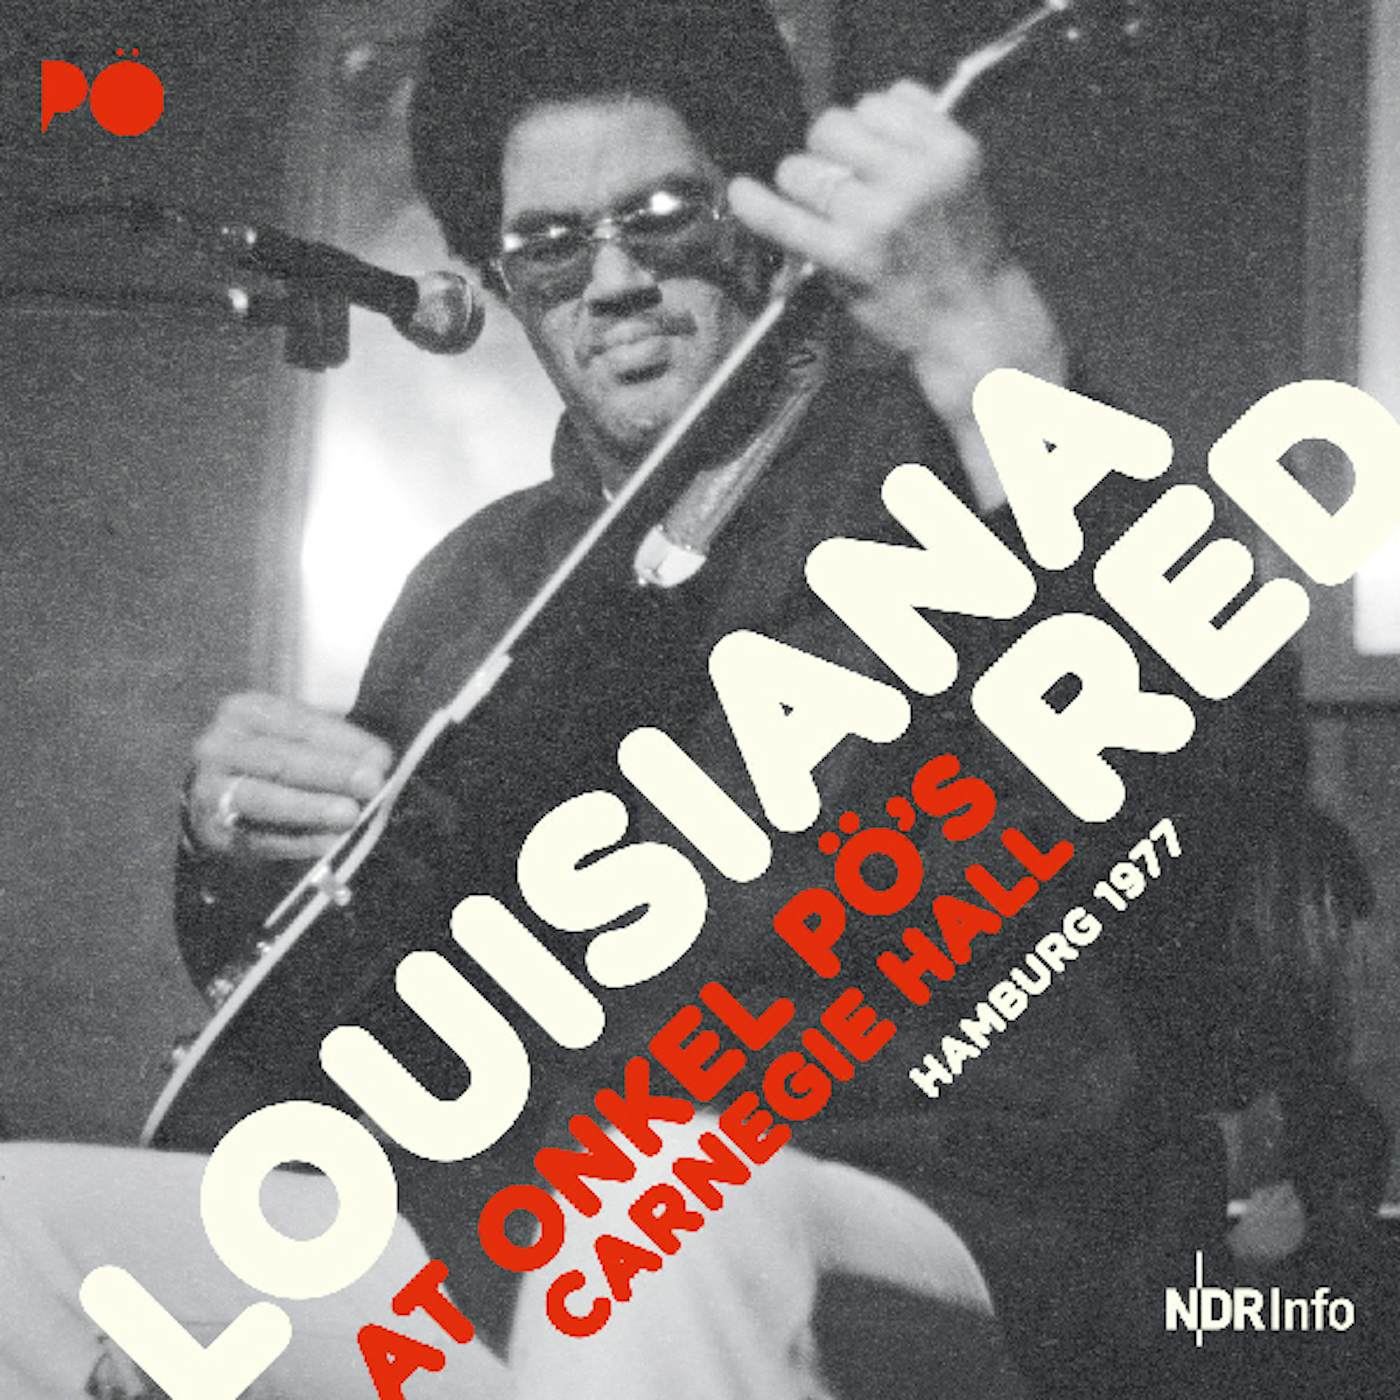 Louisiana Red AT ONKEL PO'S CARNEGIE HALL HAMBURG 1977 Vinyl Record